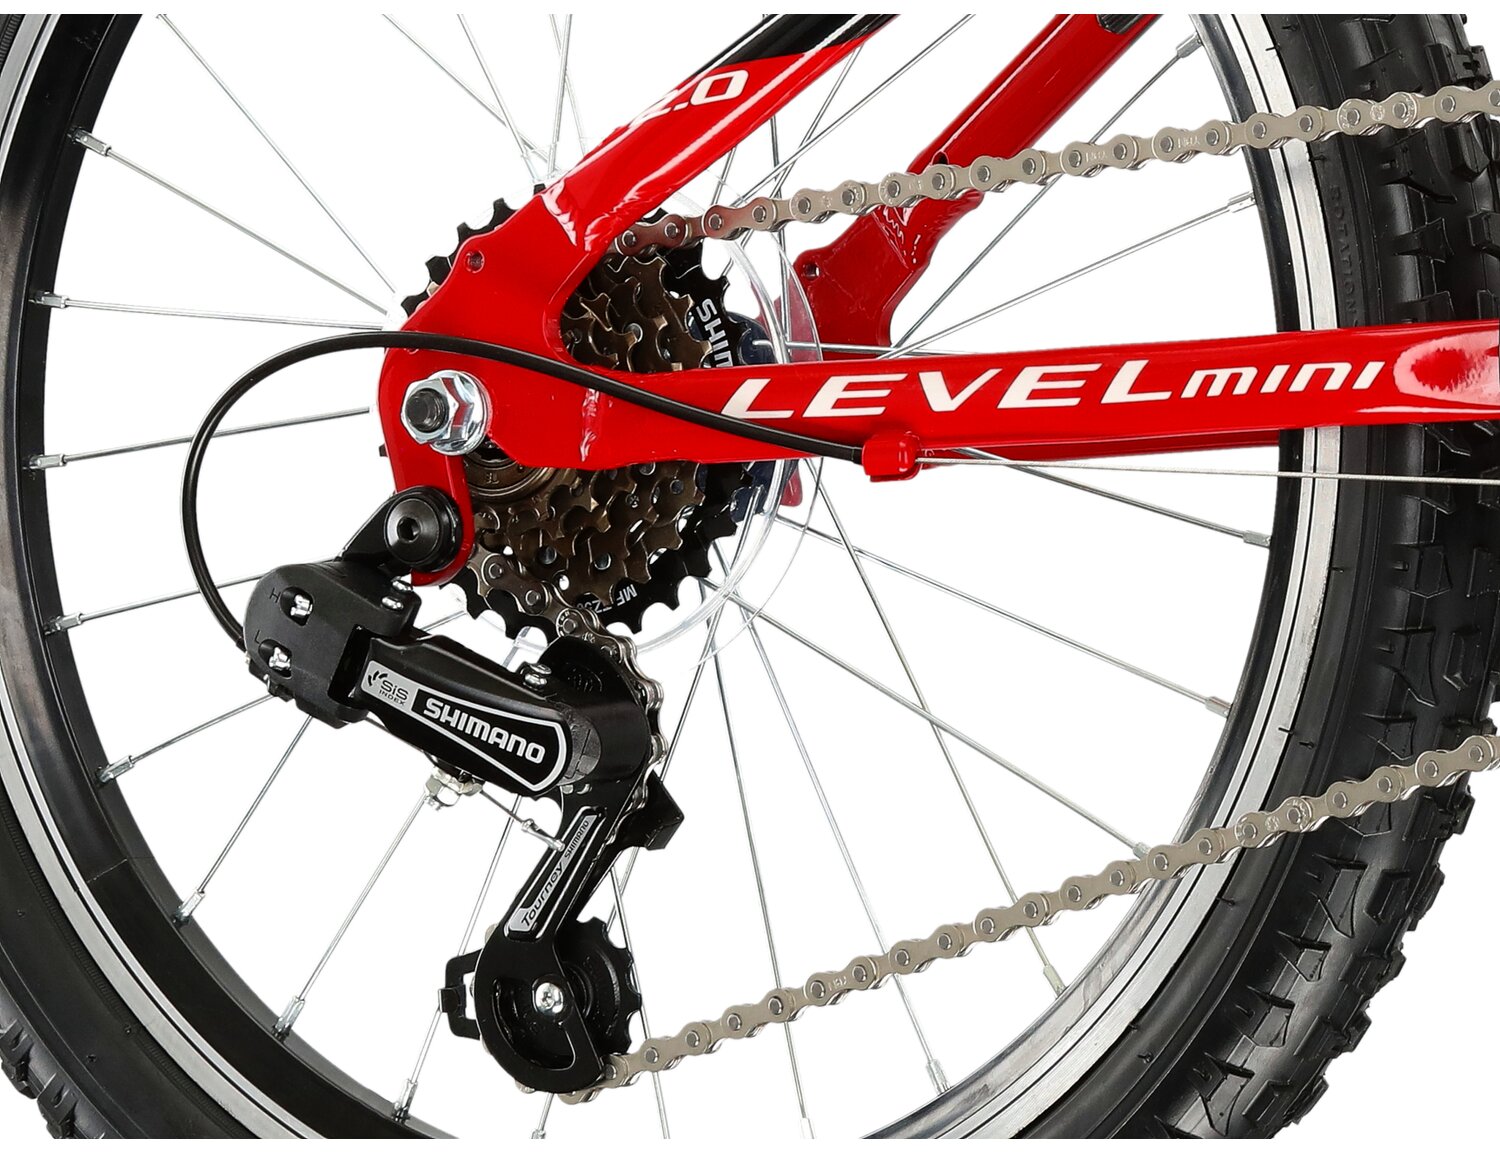  Tylna sześciorzędowa przerzutka Shimano Tourney TY21 oraz hamulce v-brake w rowerze dziecięcym KROSS Level Mini 2.0 